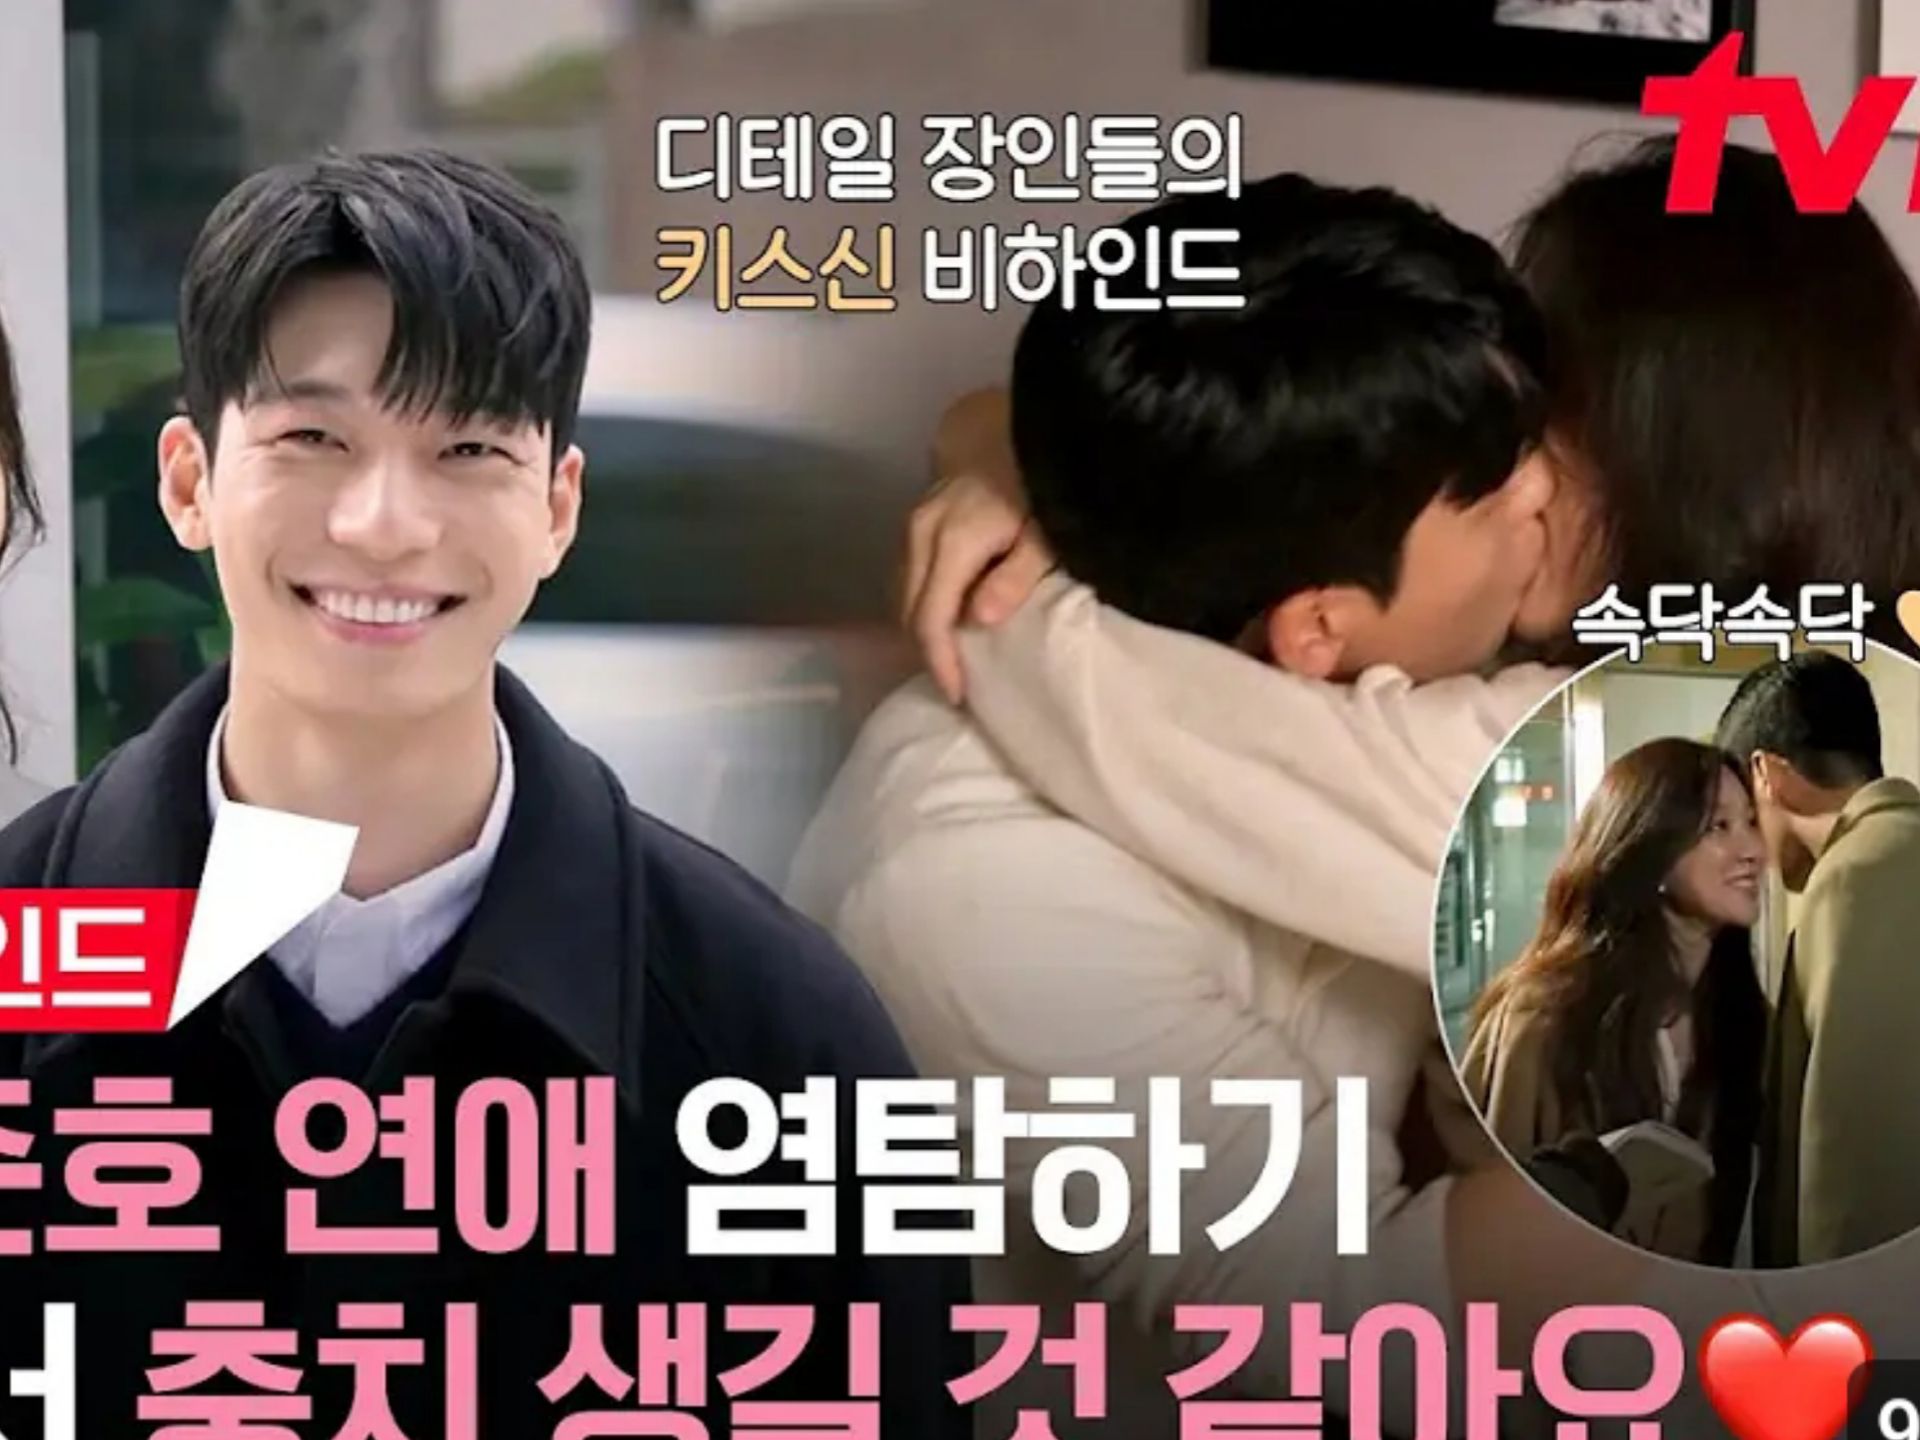 Dibalik Layar Adegan Kissing Wi Ha Joon dan Jung Ryeo Won di Drama 'The Midnight Romance in Hagwon'